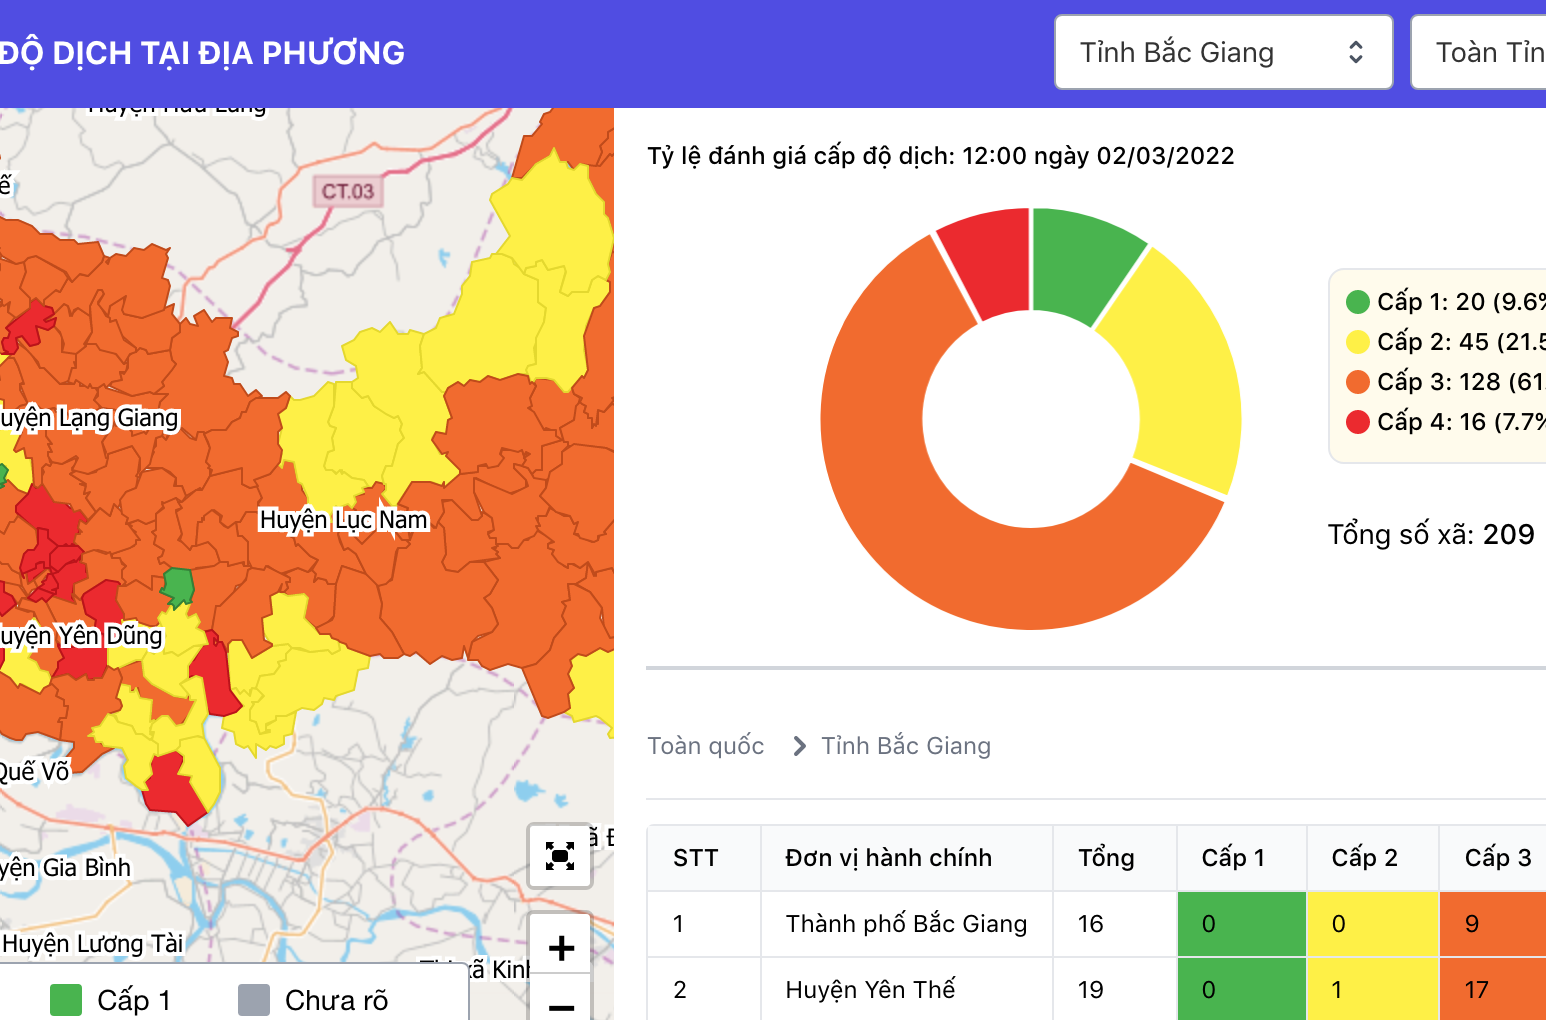 Hãy cập nhật bản đồ cấp độ dịch Hà Nội 2024 để cùng chung tay phòng dịch thành công. Điều này sẽ giúp người dân nắm bắt tình hình dịch bệnh hiện tại và đưa ra những quyết định hợp lý khi di chuyển trong thành phố.